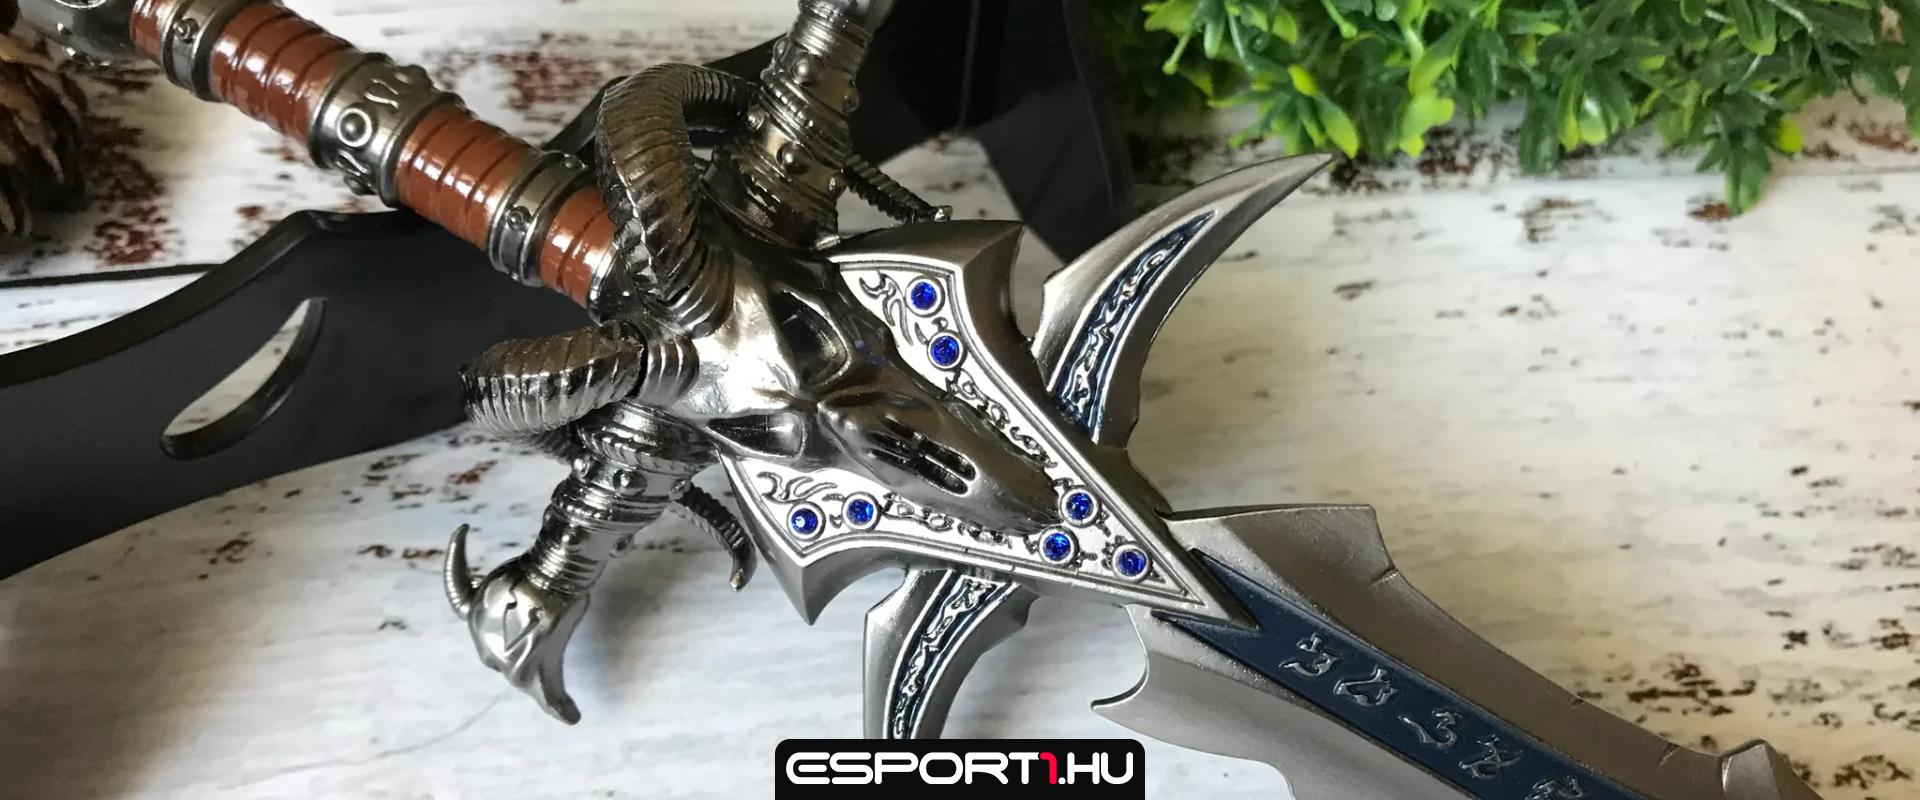 Újraalkották a World of Warcraft leglegendásabb fegyverét